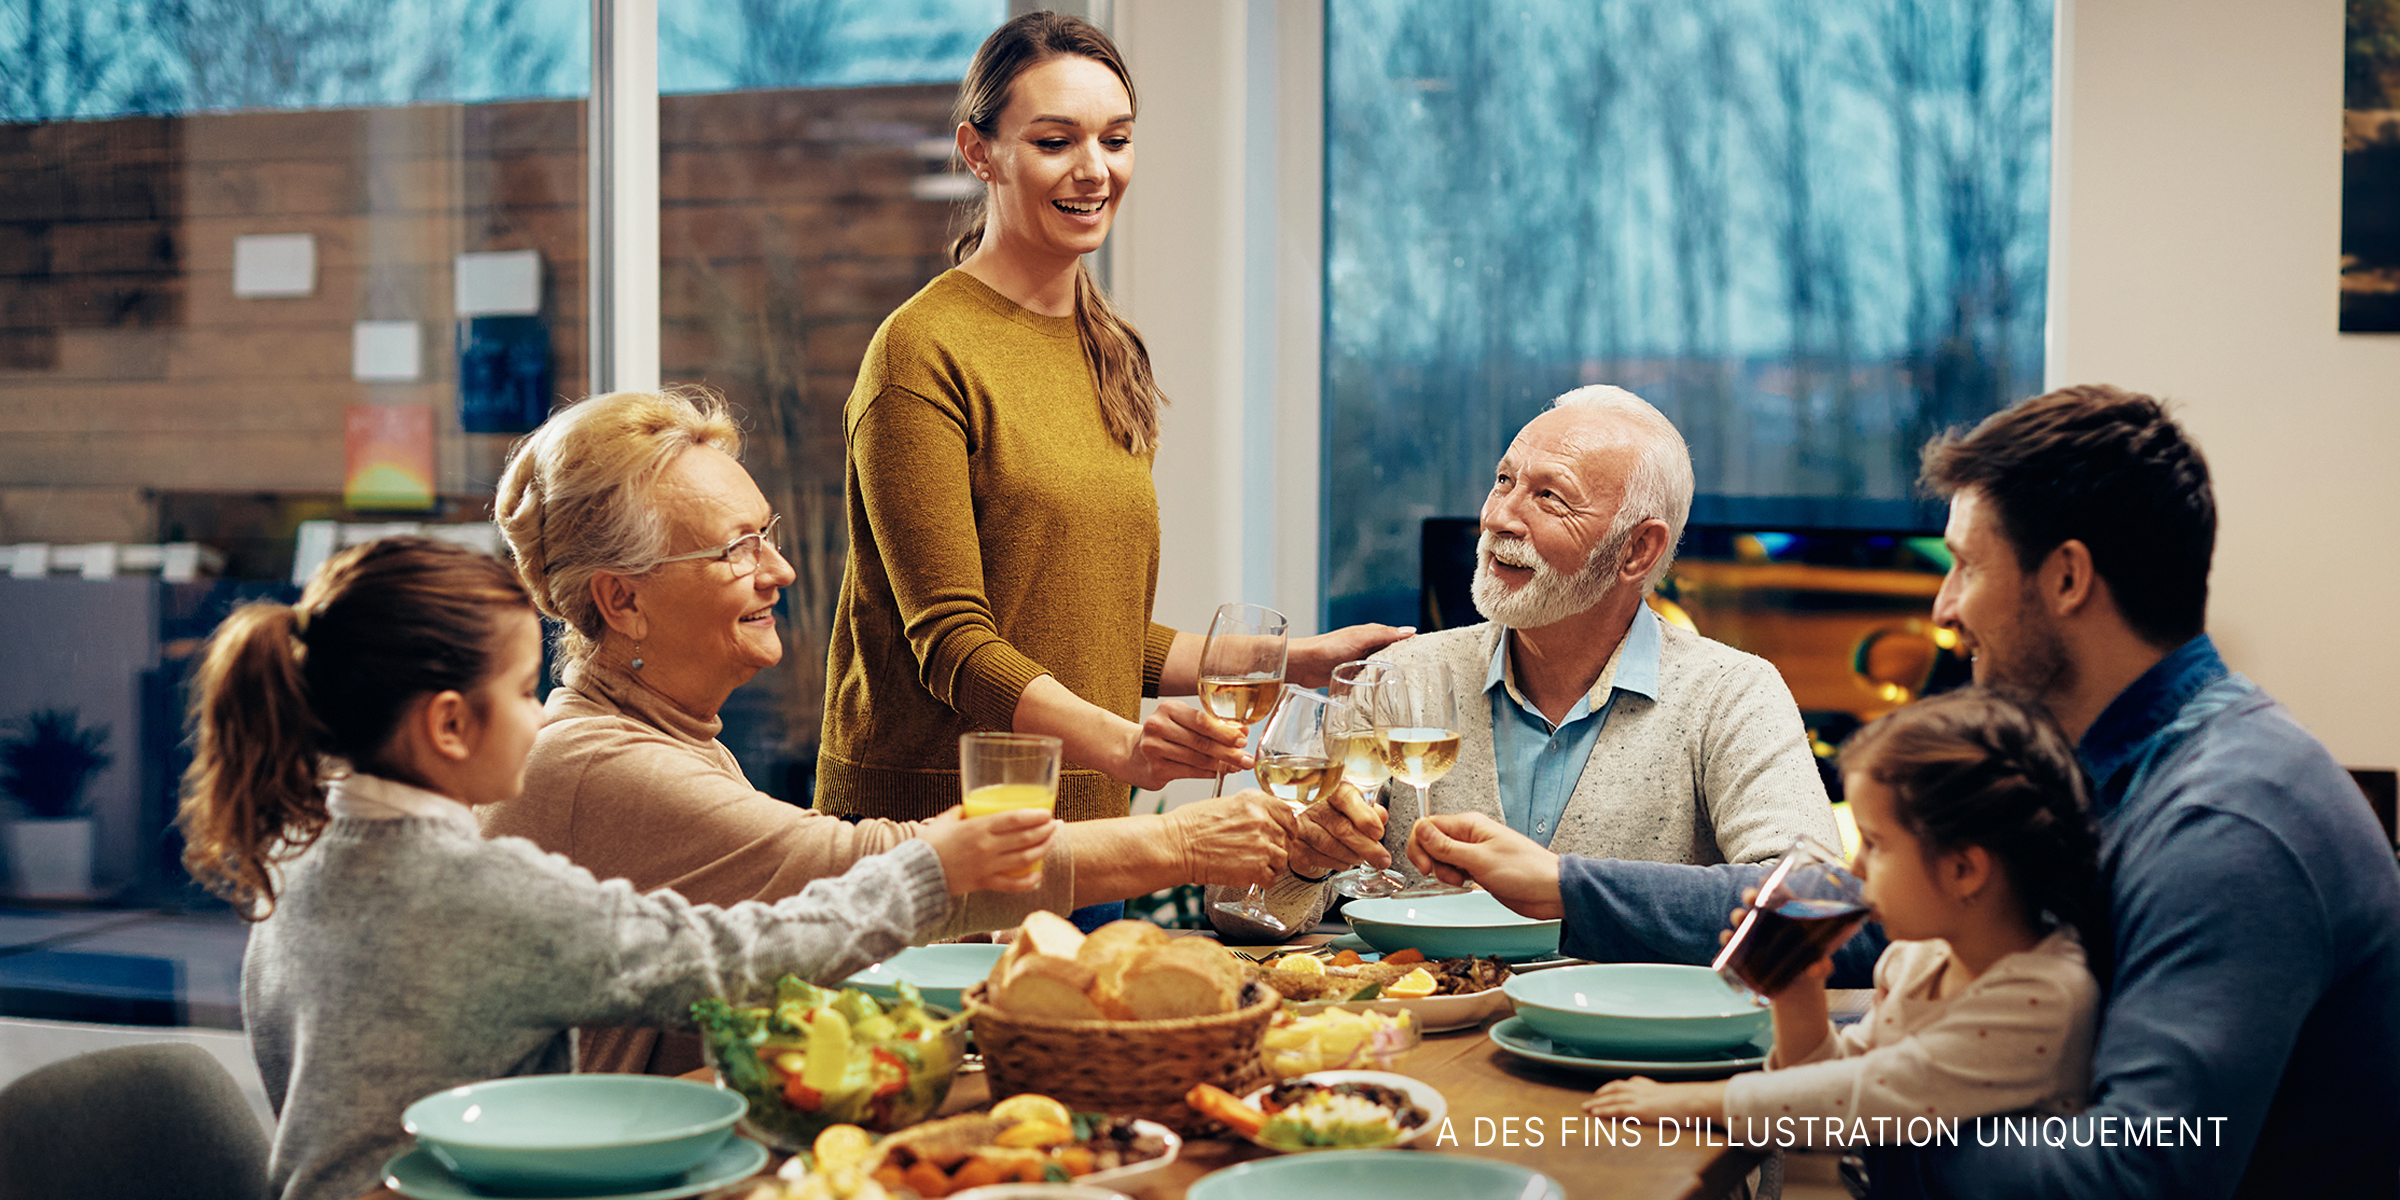 Une famille élargie, heureuse de porter un toast tout en déjeunant ensemble dans la salle à manger | Source : Shutterstock